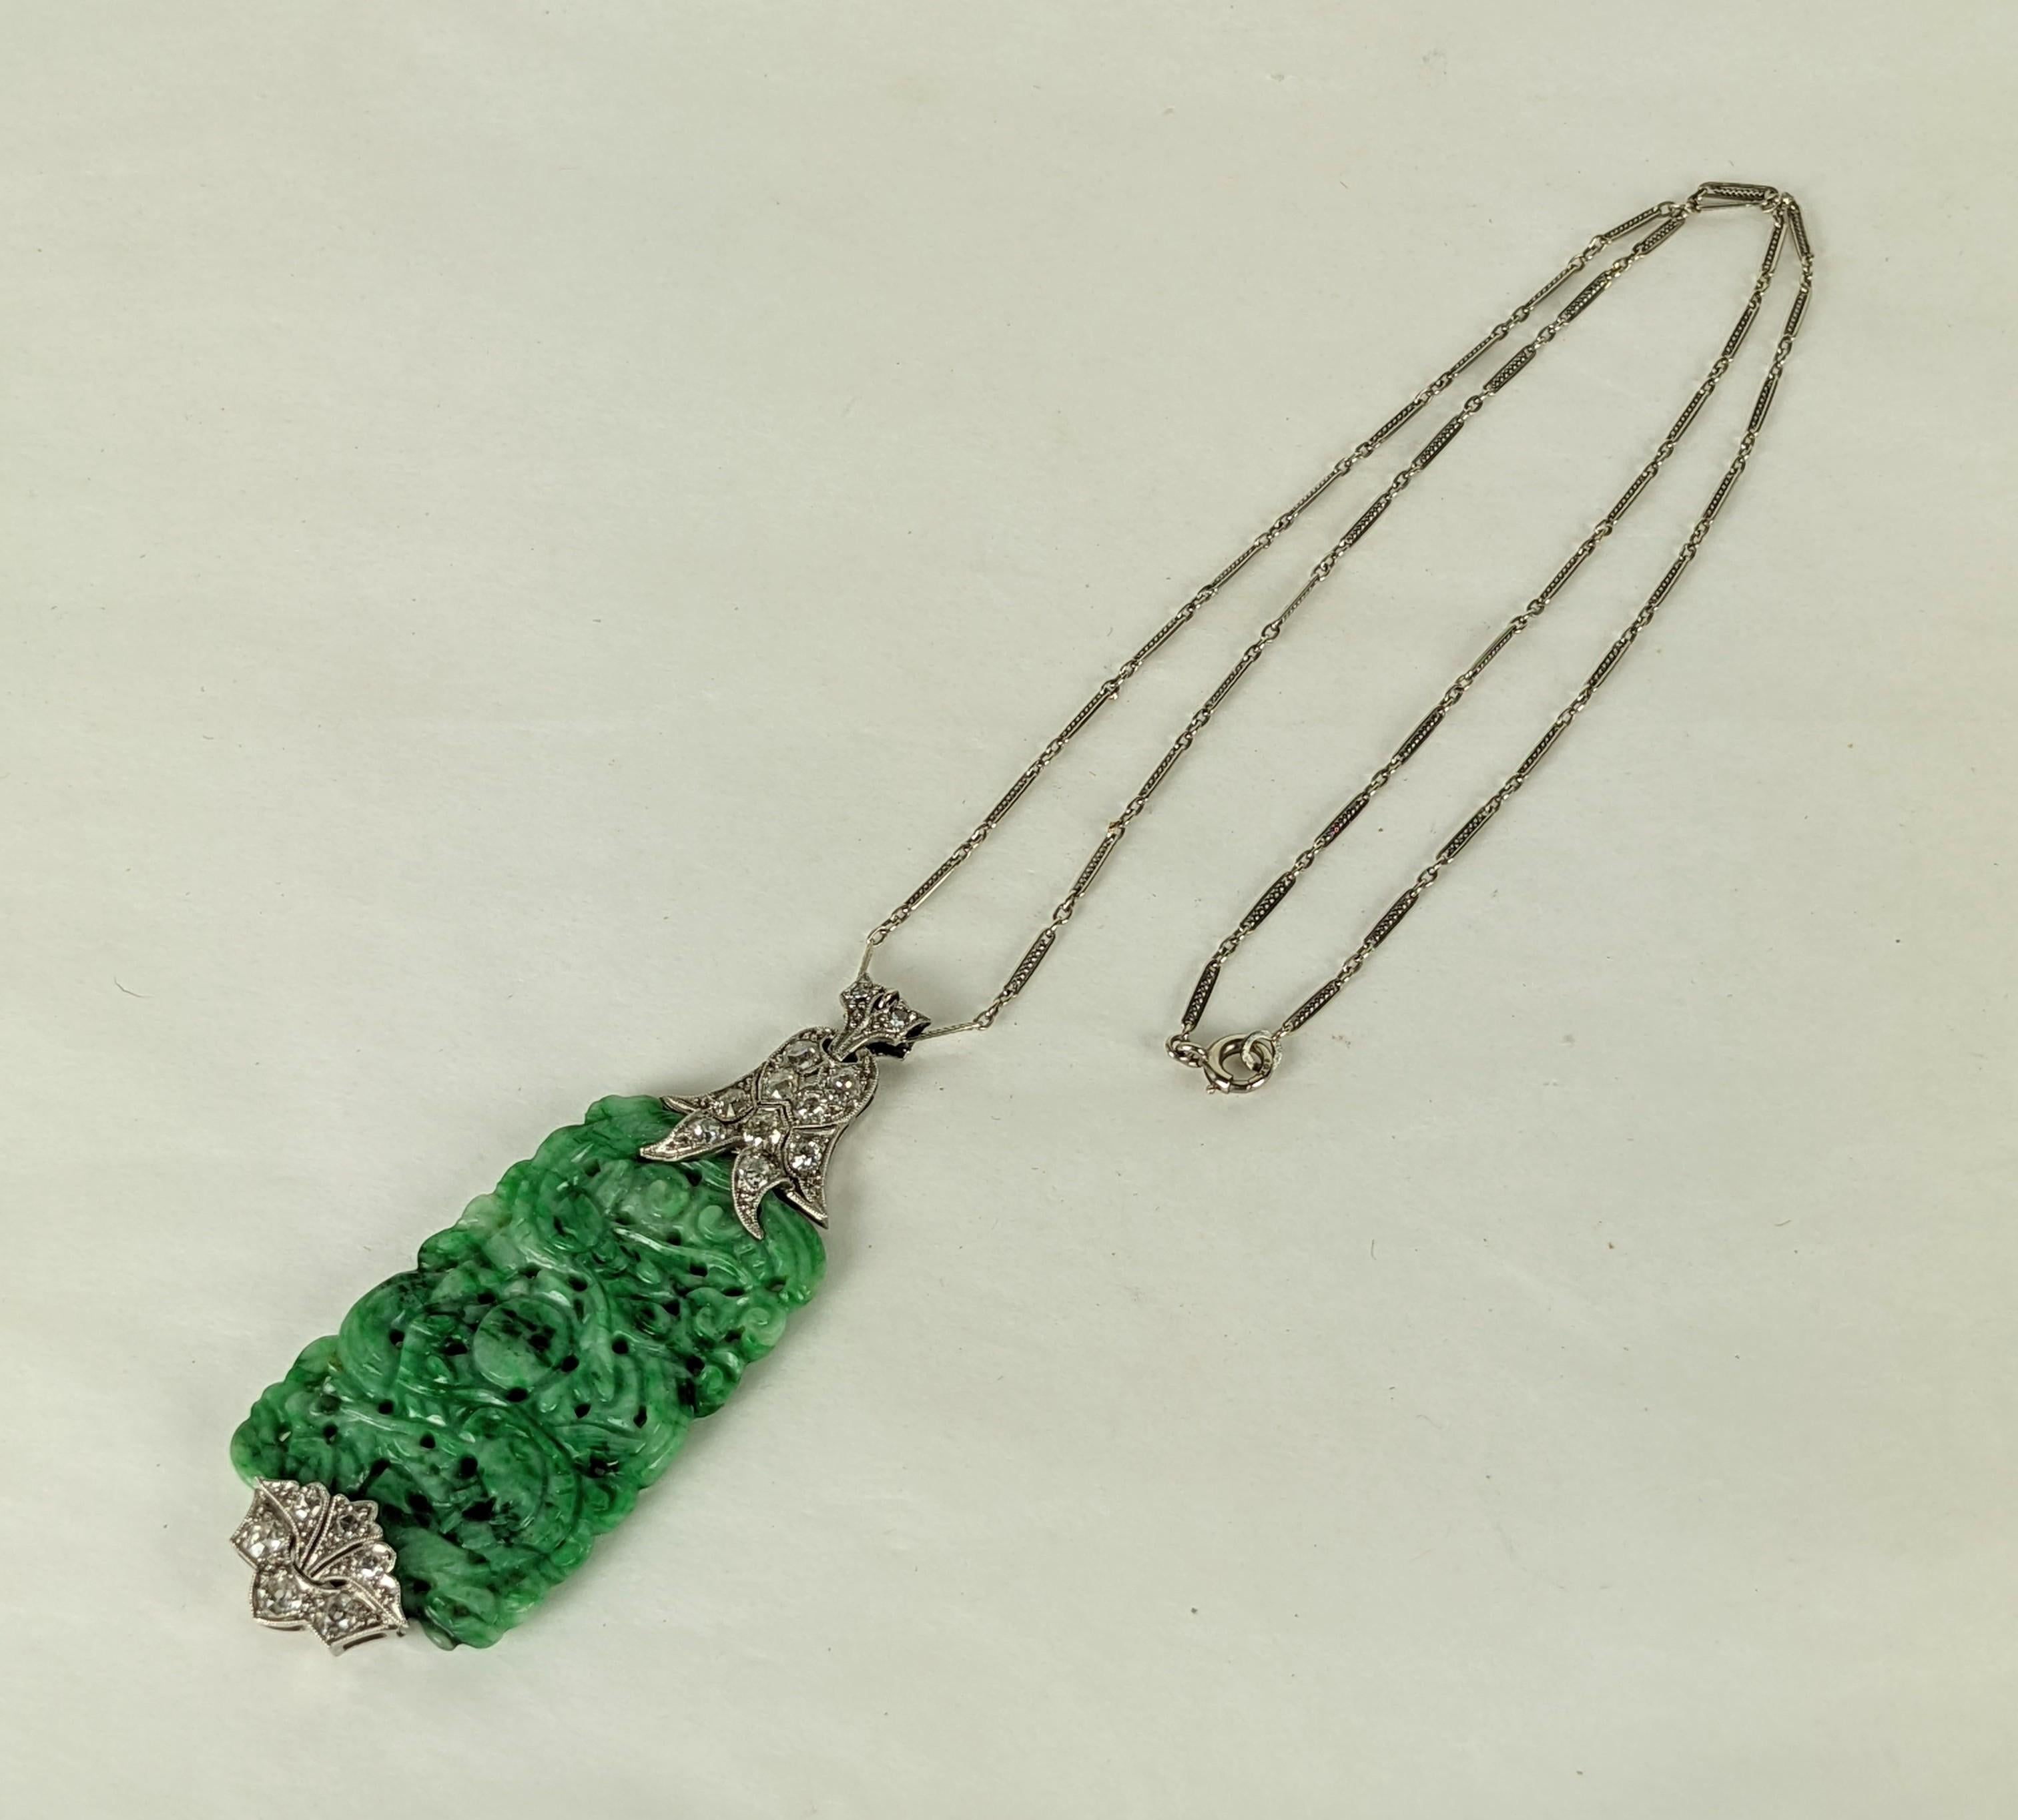 Pendentif Art déco en jade et diamant, serti en platine 18k. Le panneau de jade sculpté antique est maintenu par des hampes floriformes diamantées deco. Diamants de taille européenne brillants sur l'ensemble de la pièce. Chaîne à maillons torsadés